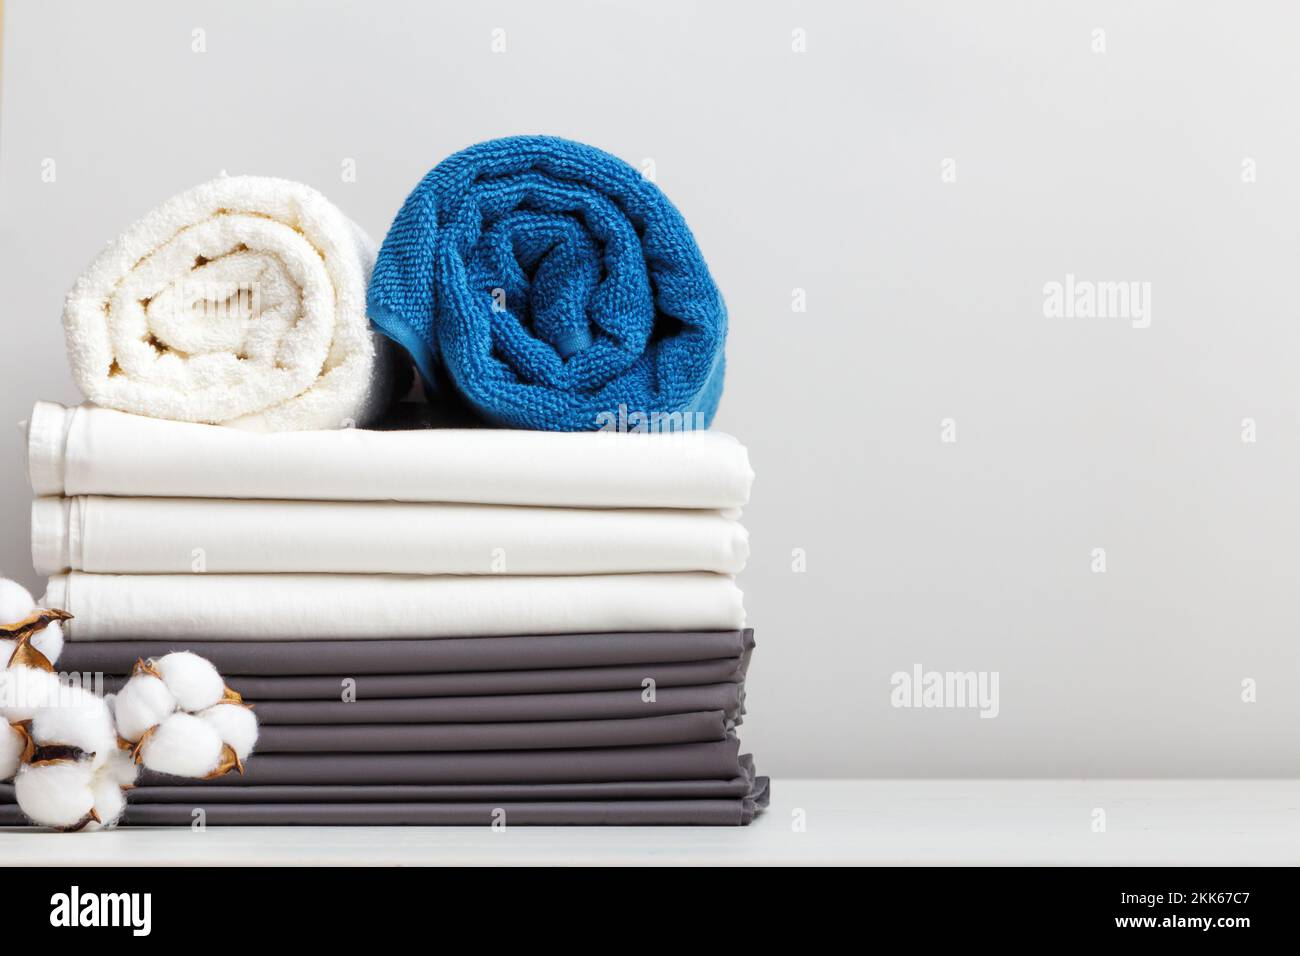 Una pila di lenzuola, rotoli di asciugamani bianchi e blu sul tavolo. Foto Stock